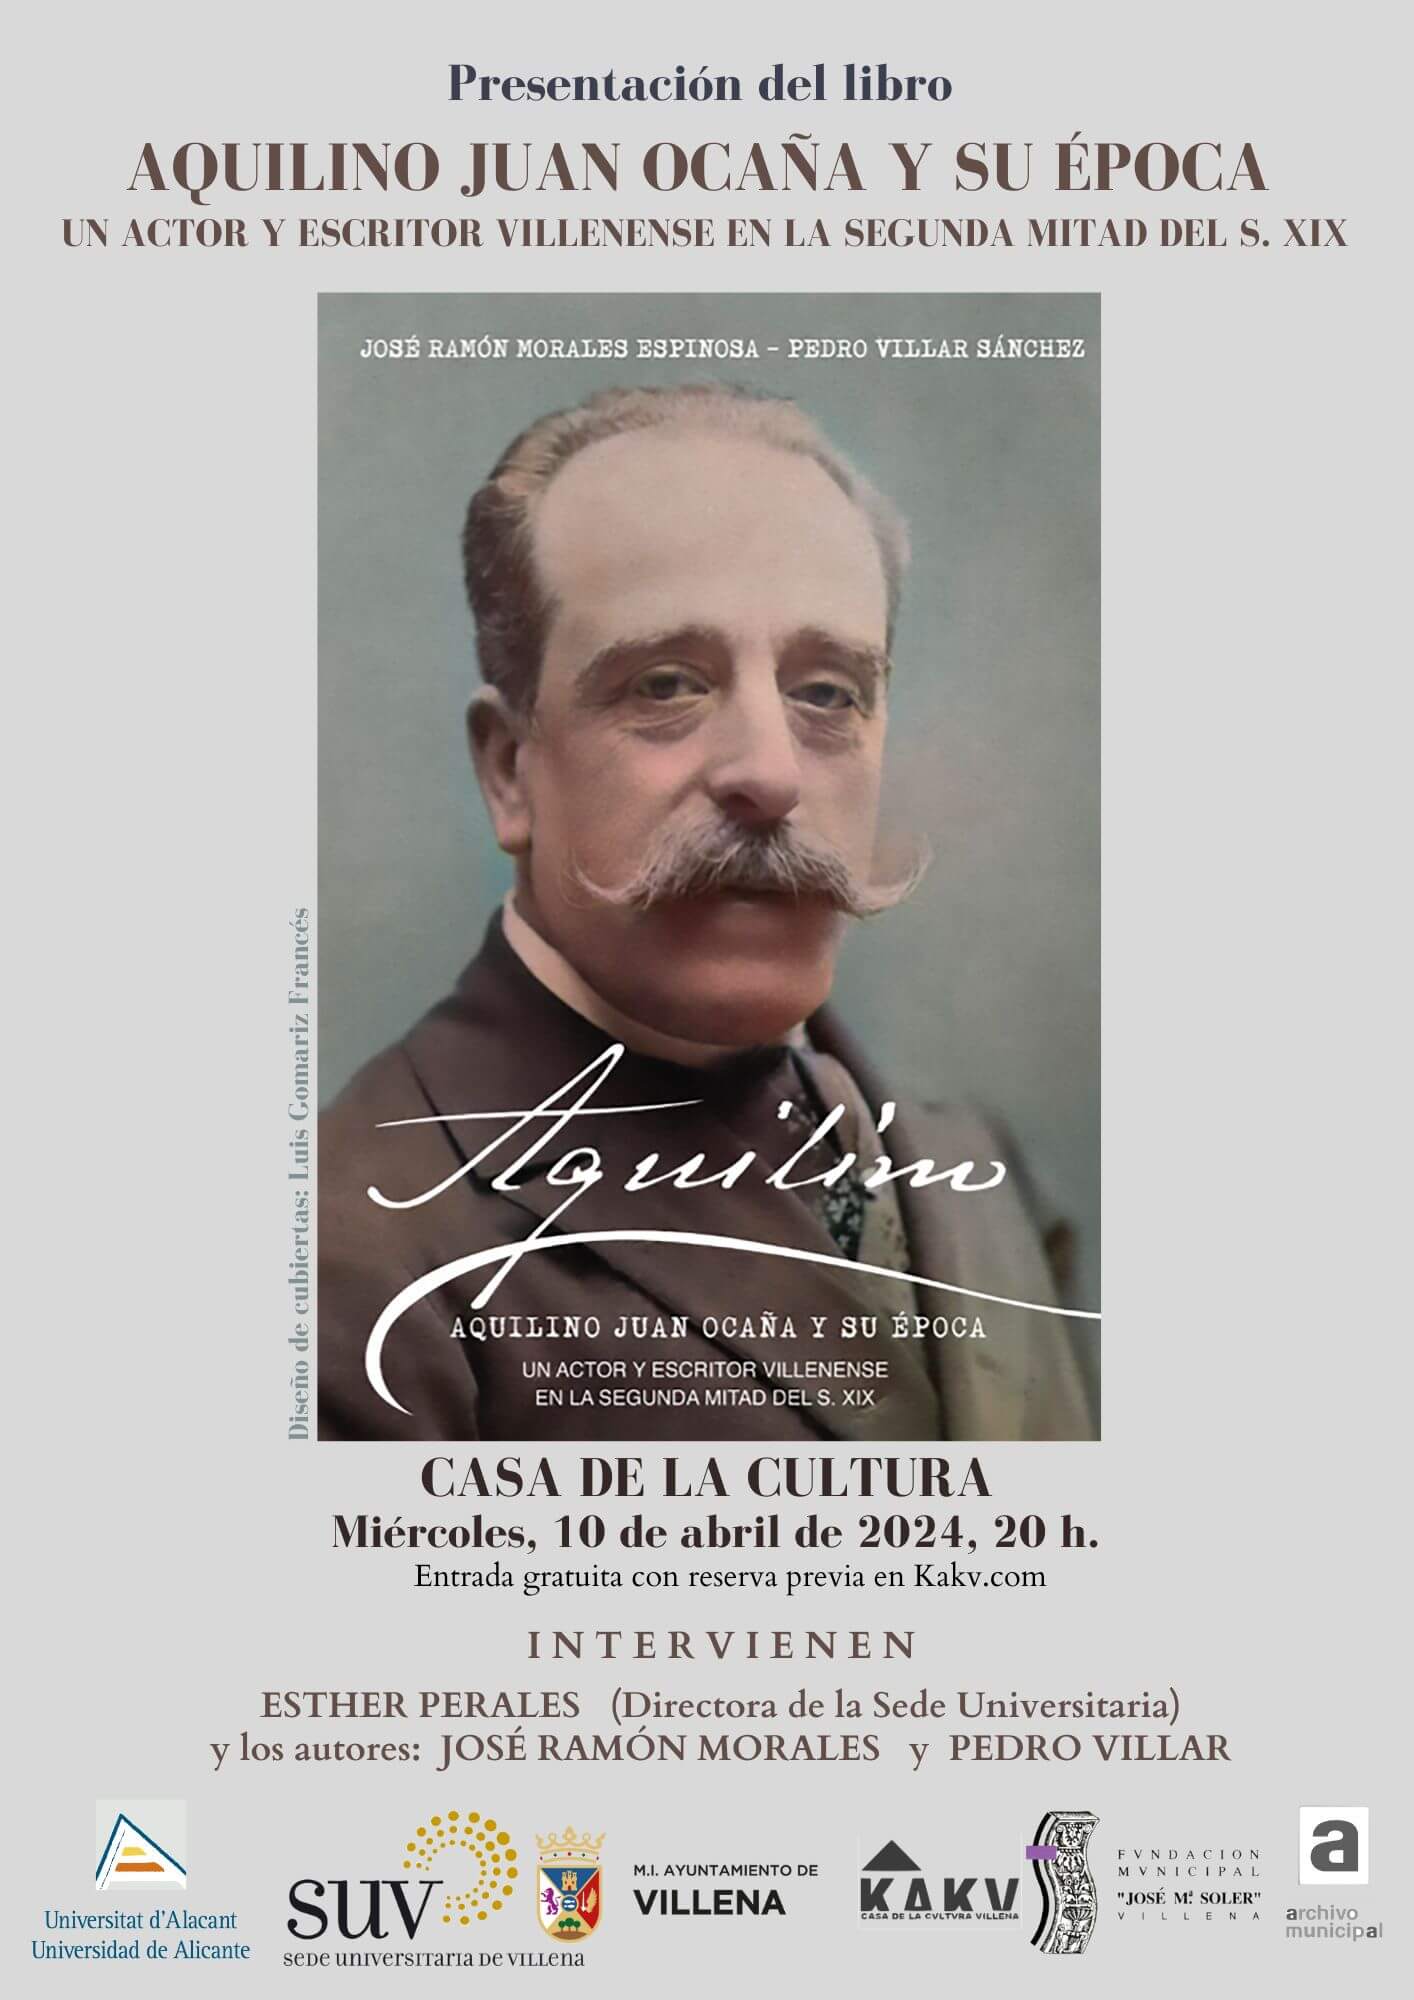 Presentación del libro “Aquilino Juan Ocaña y su época” e inauguración de la exposición sobre el autor villenense